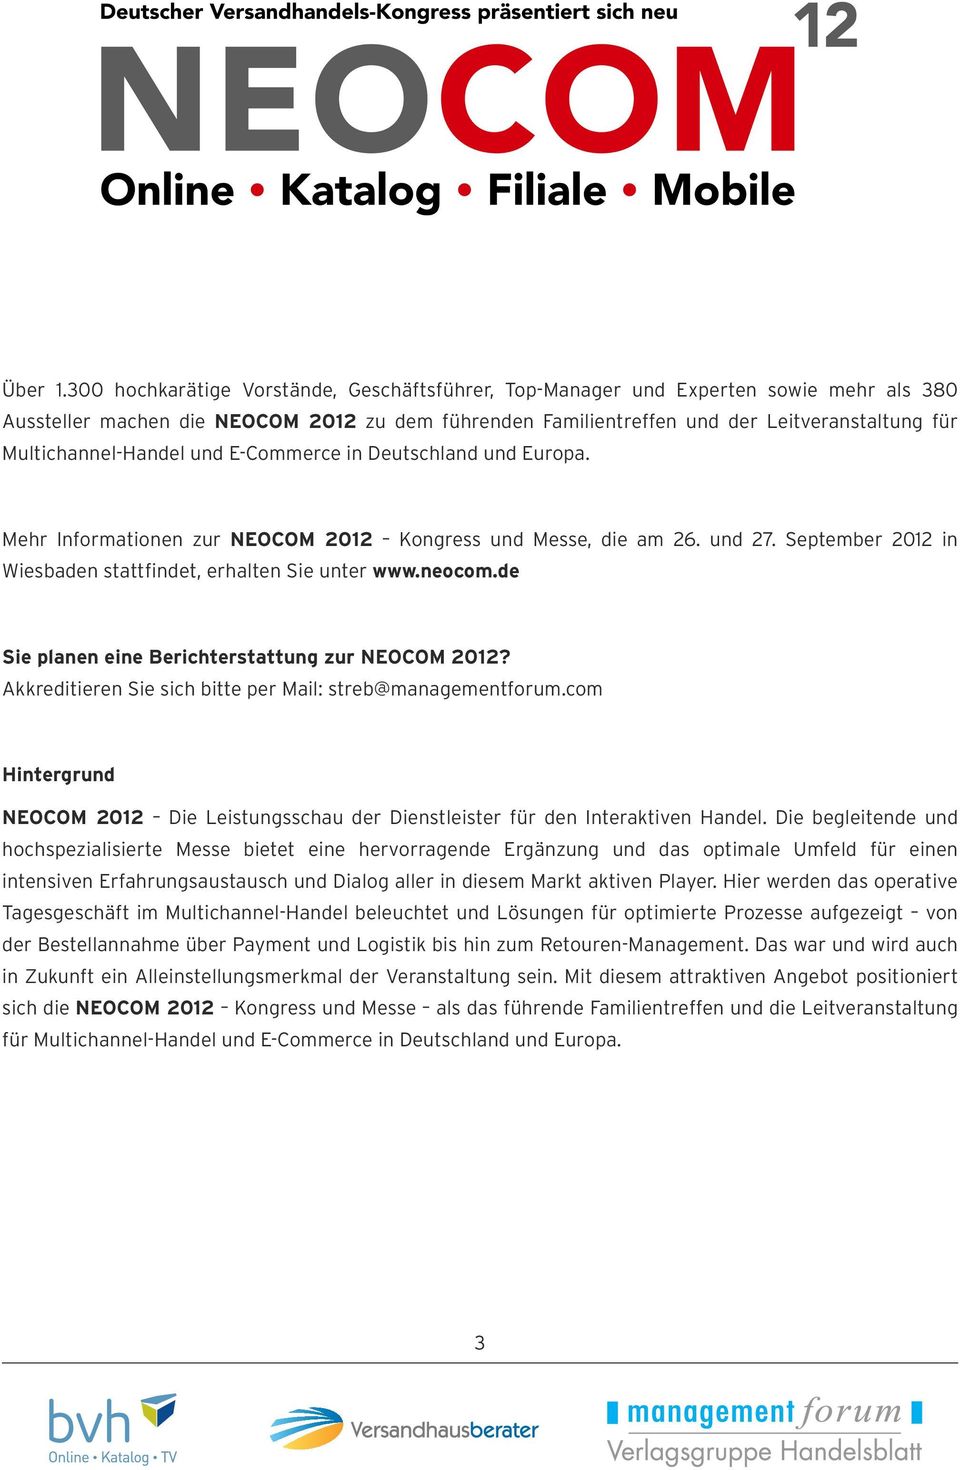 Multichannel-Handel und E-Commerce in Deutschland und Europa. Mehr Informationen zur NEOCOM 2012 Kongress und Messe, die am 26. und 27. September 2012 in Wiesbaden stattfindet, erhalten Sie unter www.